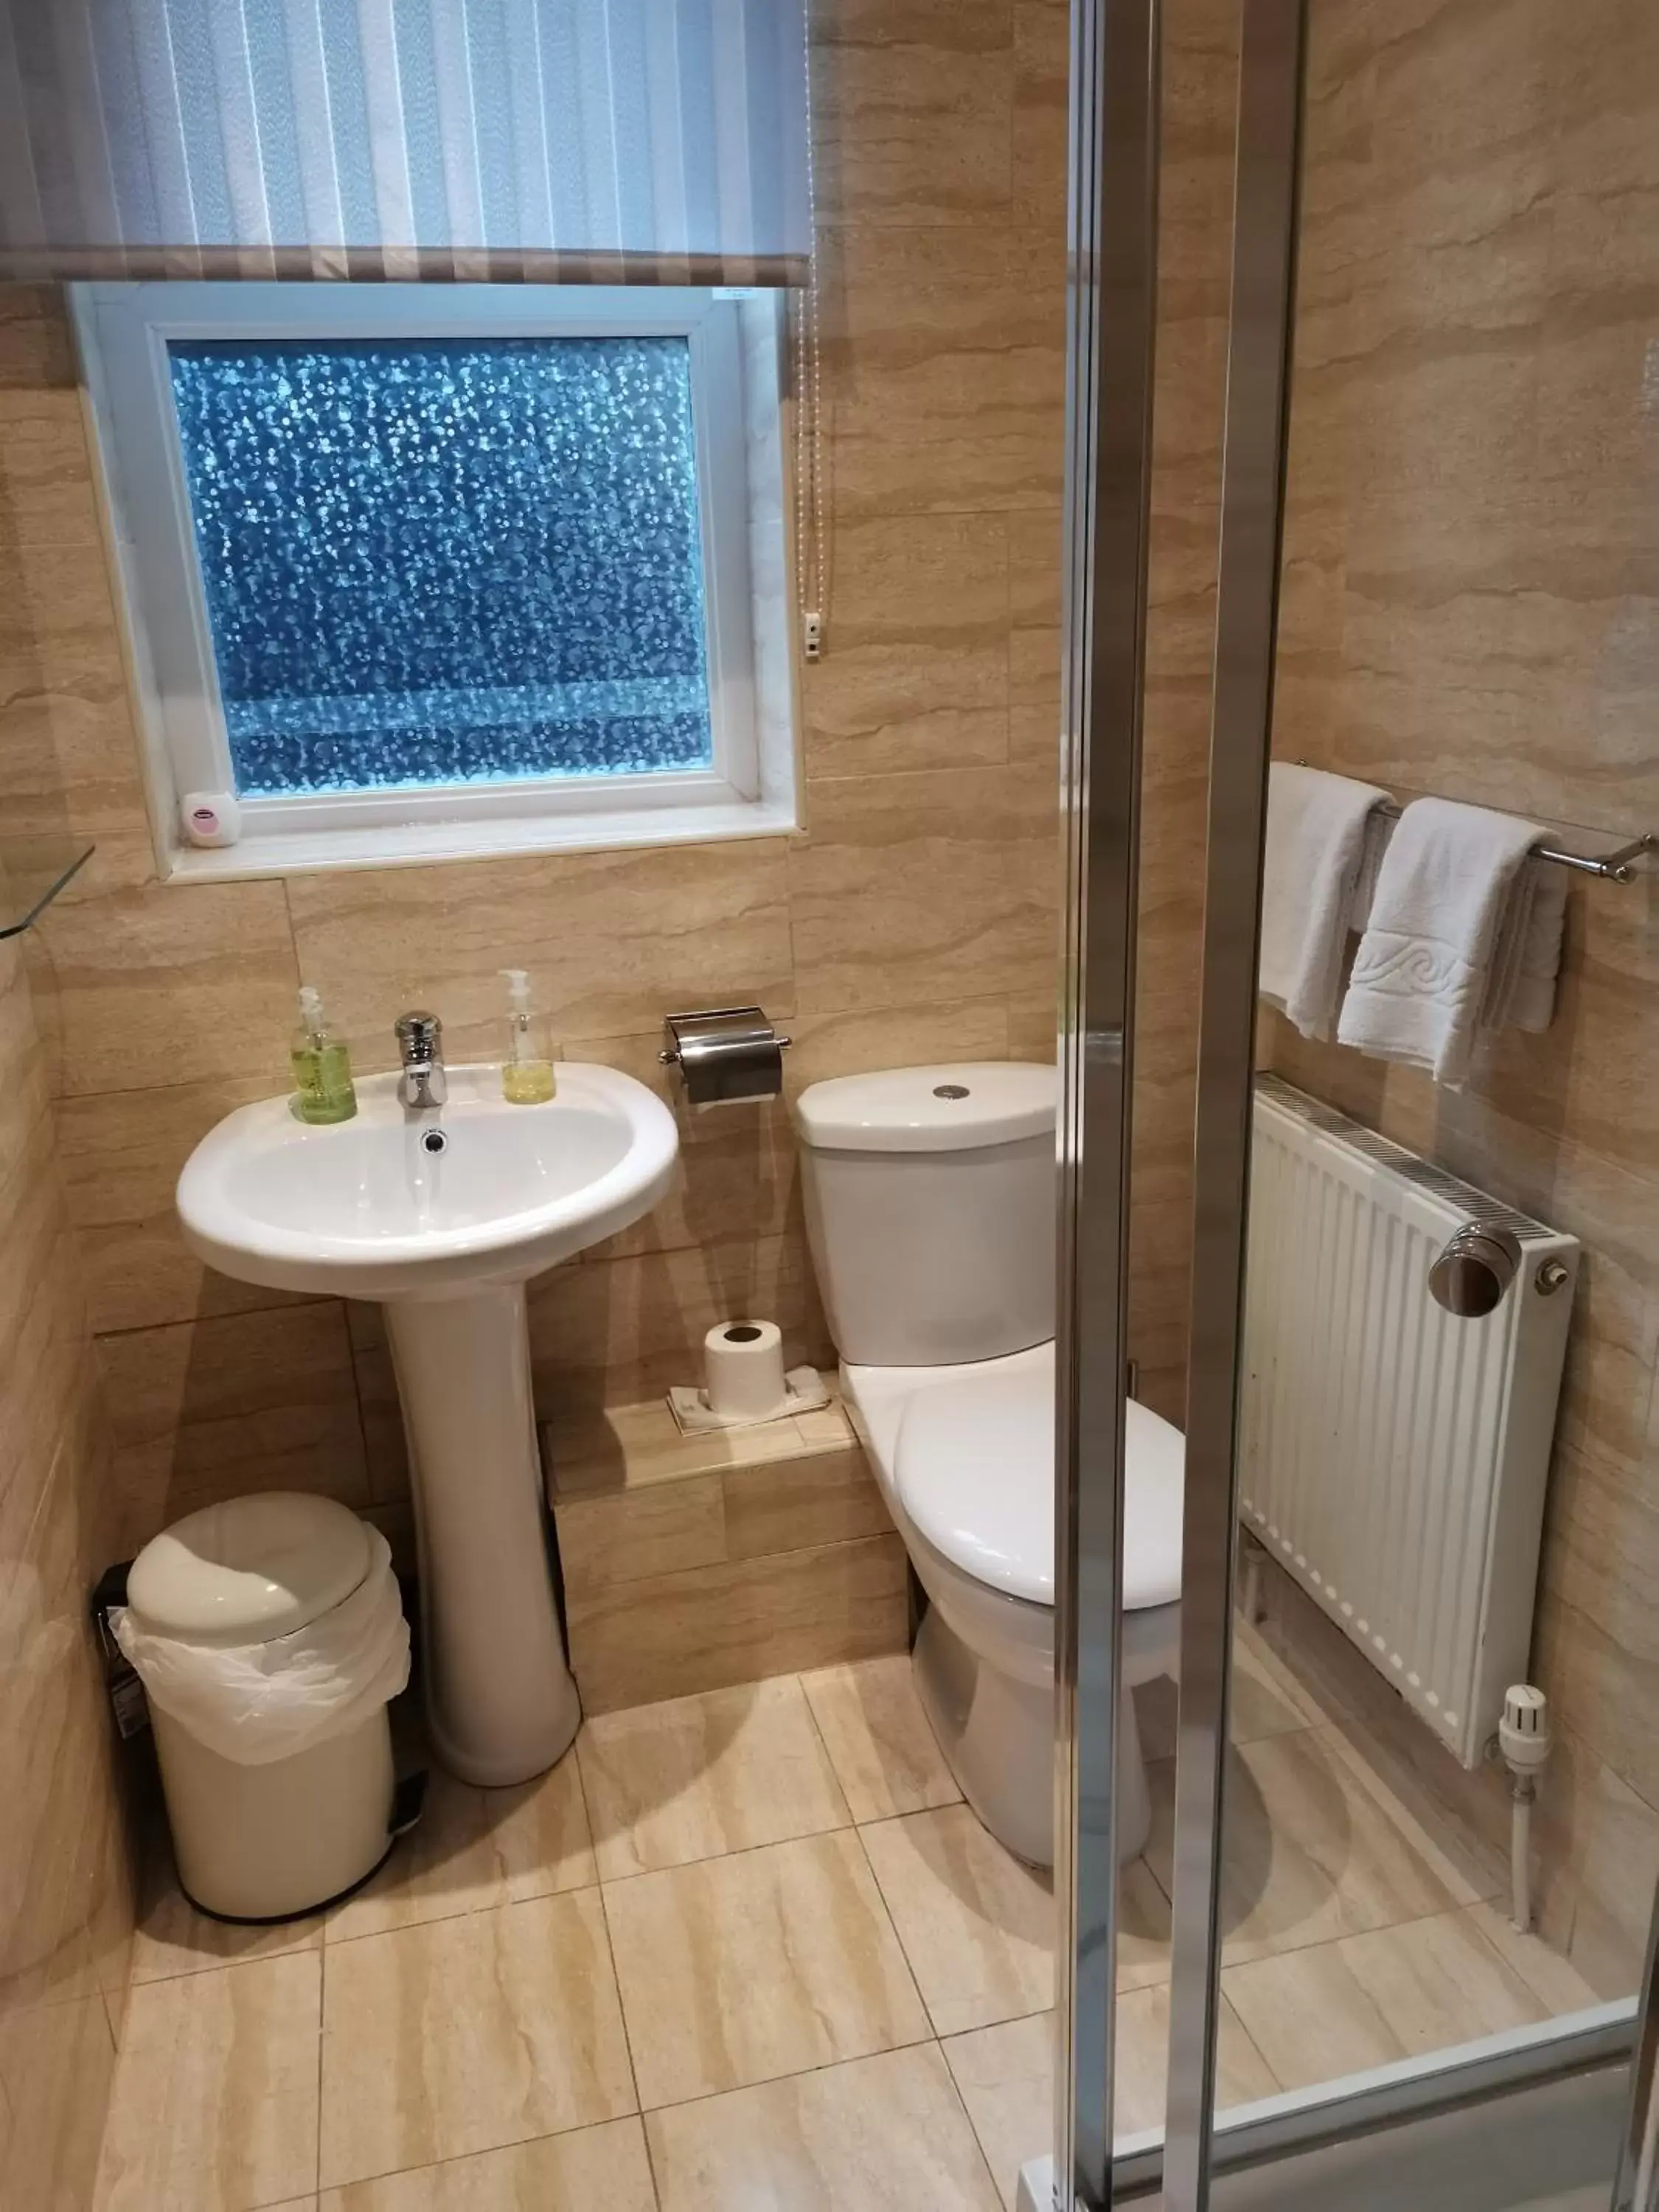 Toilet, Bathroom in Beech Mount Hotel